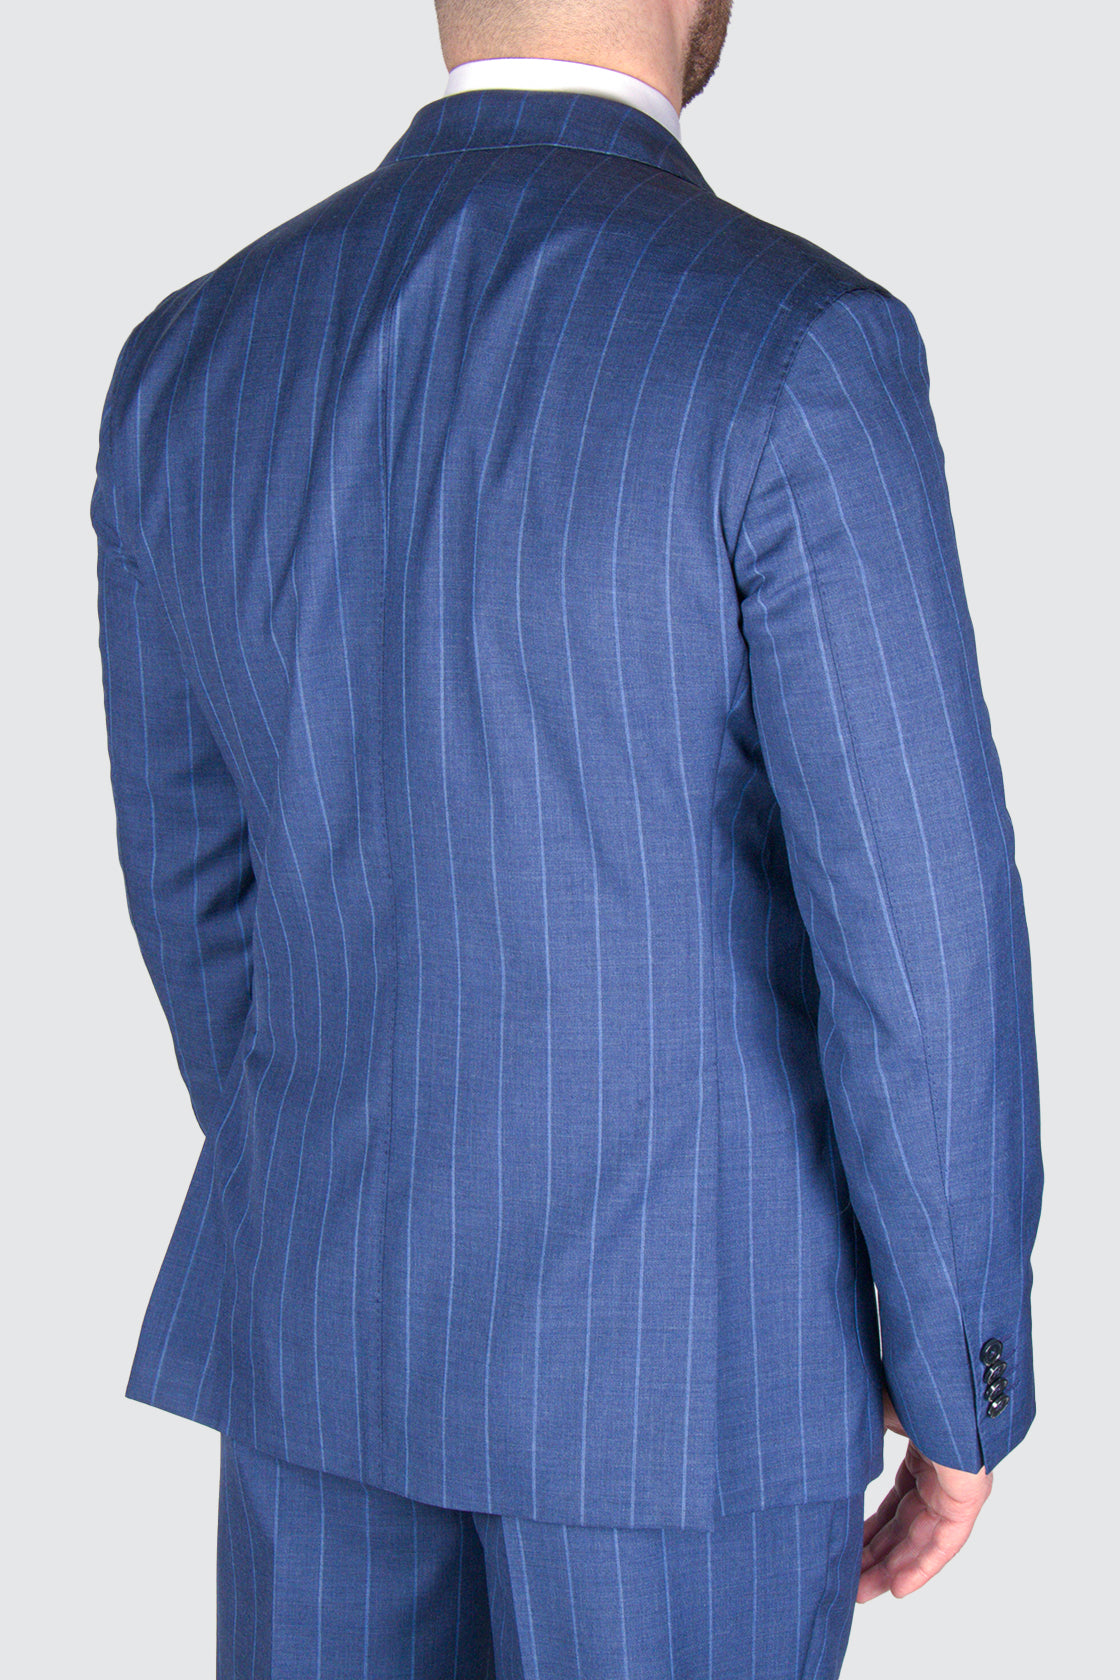 L.B.M. 1911 Wool Suit Blue